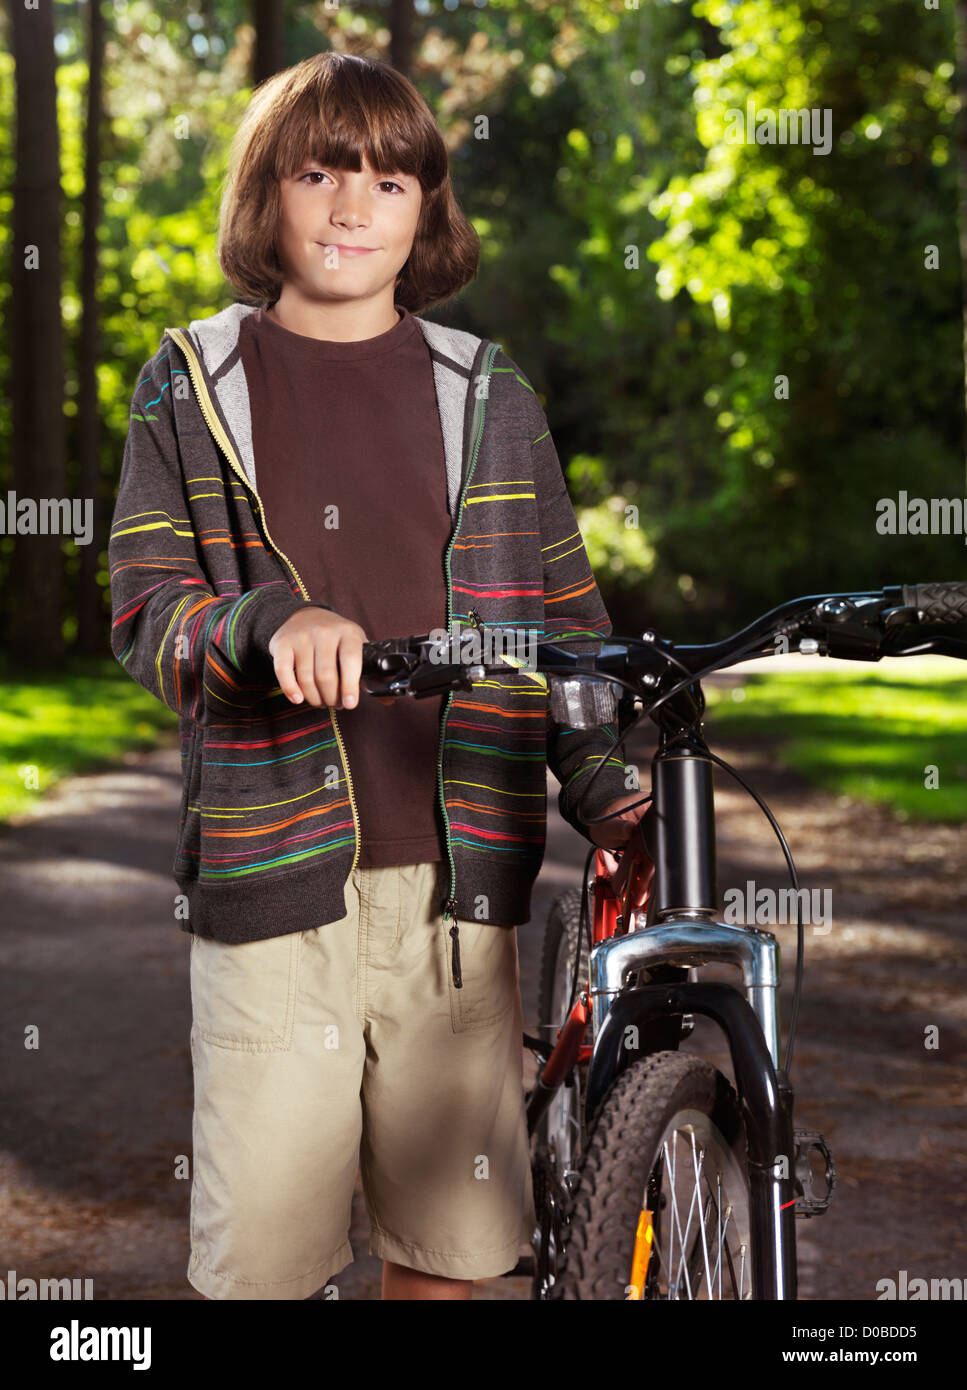 Portrait d'un enfant, garçon de dix ans, avec un vélo dans un parc. Banque D'Images